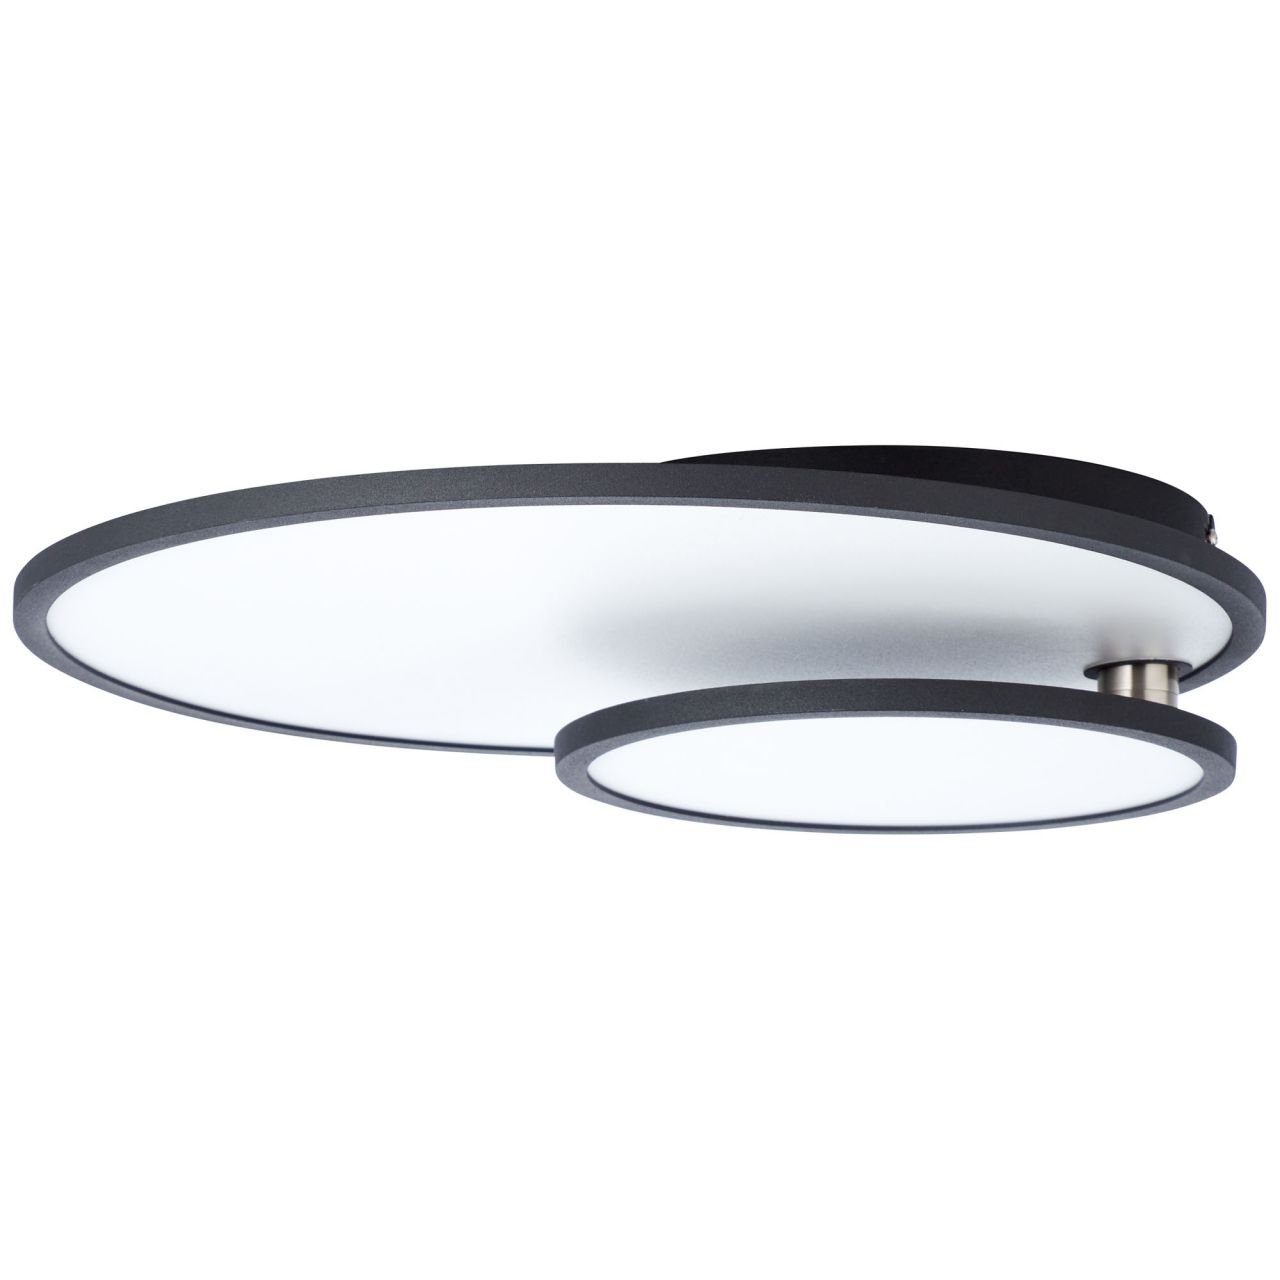 61x45cm easyDim Bility, Deckenaufbau-Paneel Lampe Aufbauleuchte schwarz/weiß LED 1x Bility Brilliant 3000K,